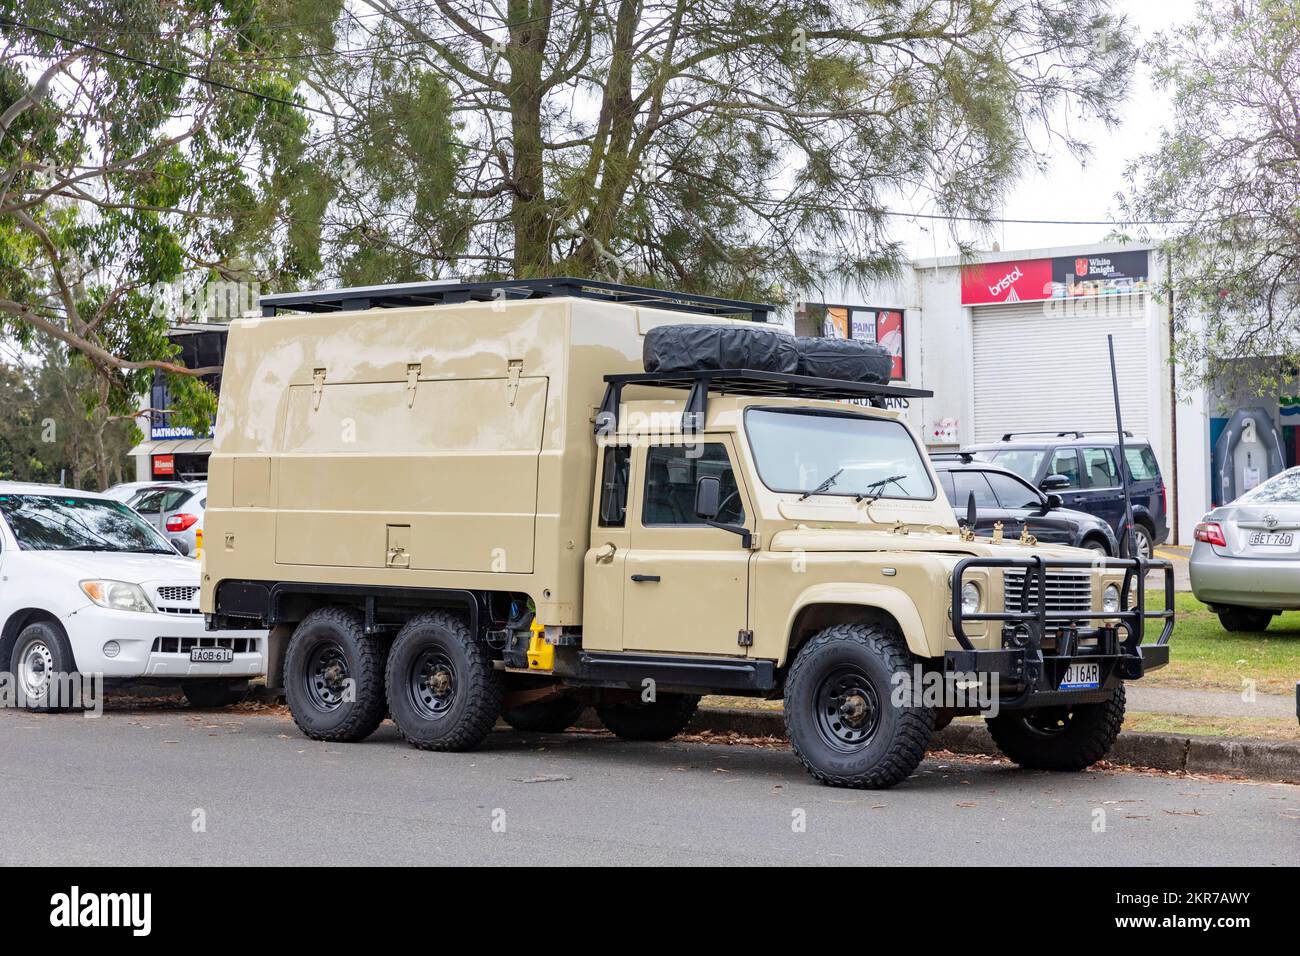 Land Rover Defender fortement modifié est devenu un camion de transport de marchandises lourdes à six roues 6, Mona Vale, Sydney, Nouvelle-Galles du Sud, Australie Banque D'Images